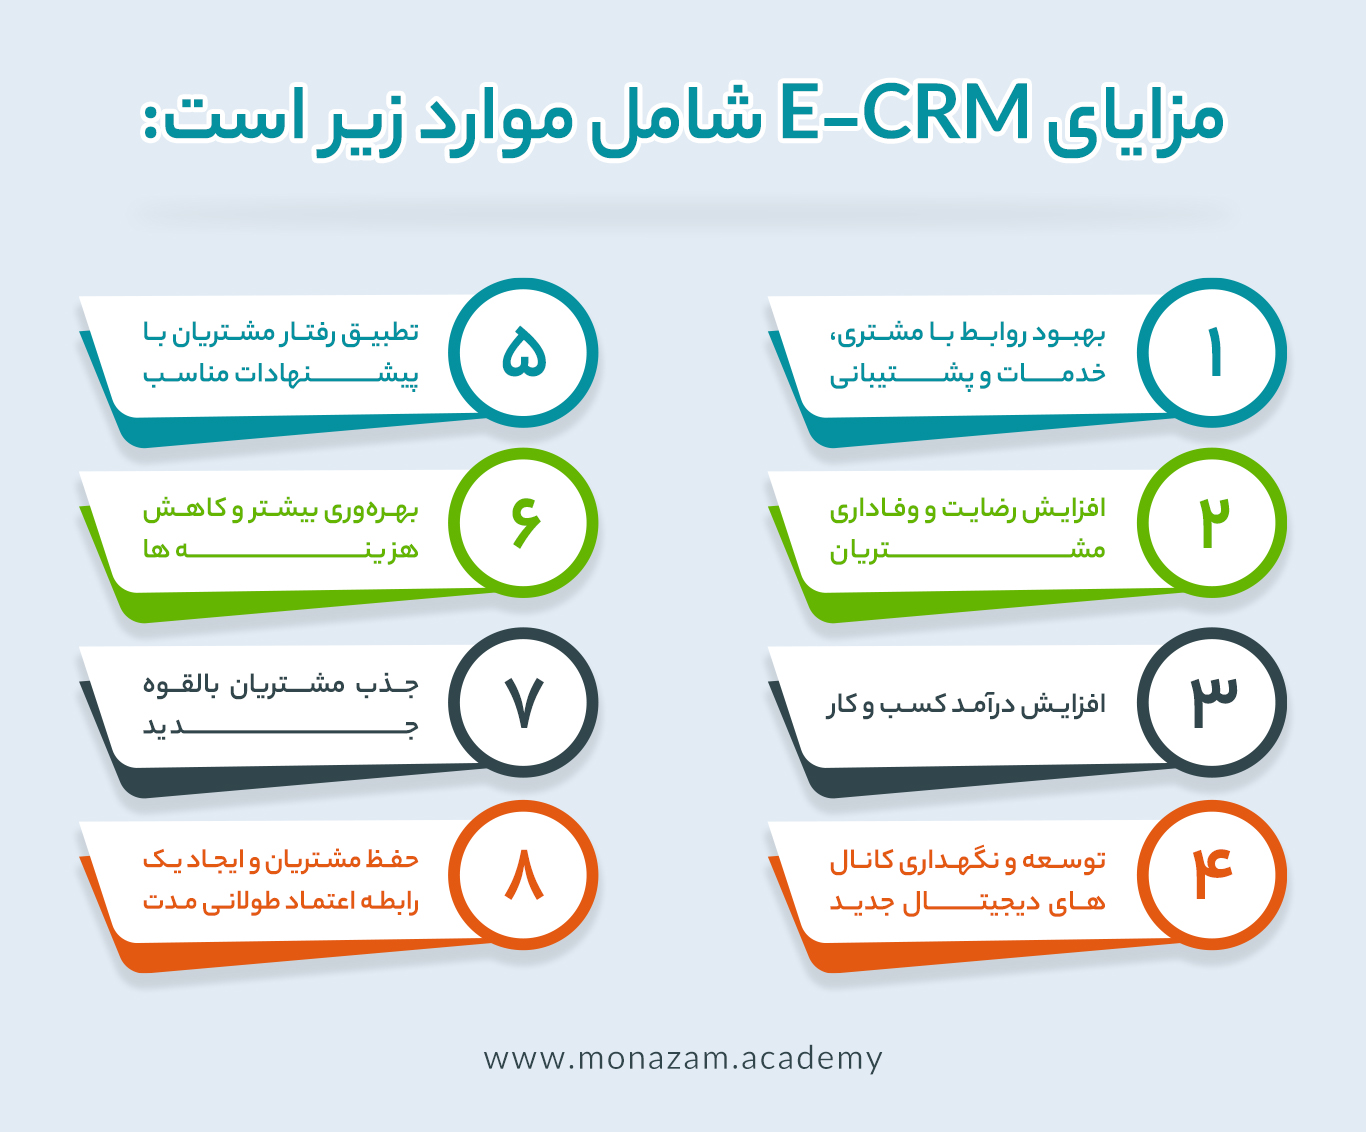 مزایای ECRM